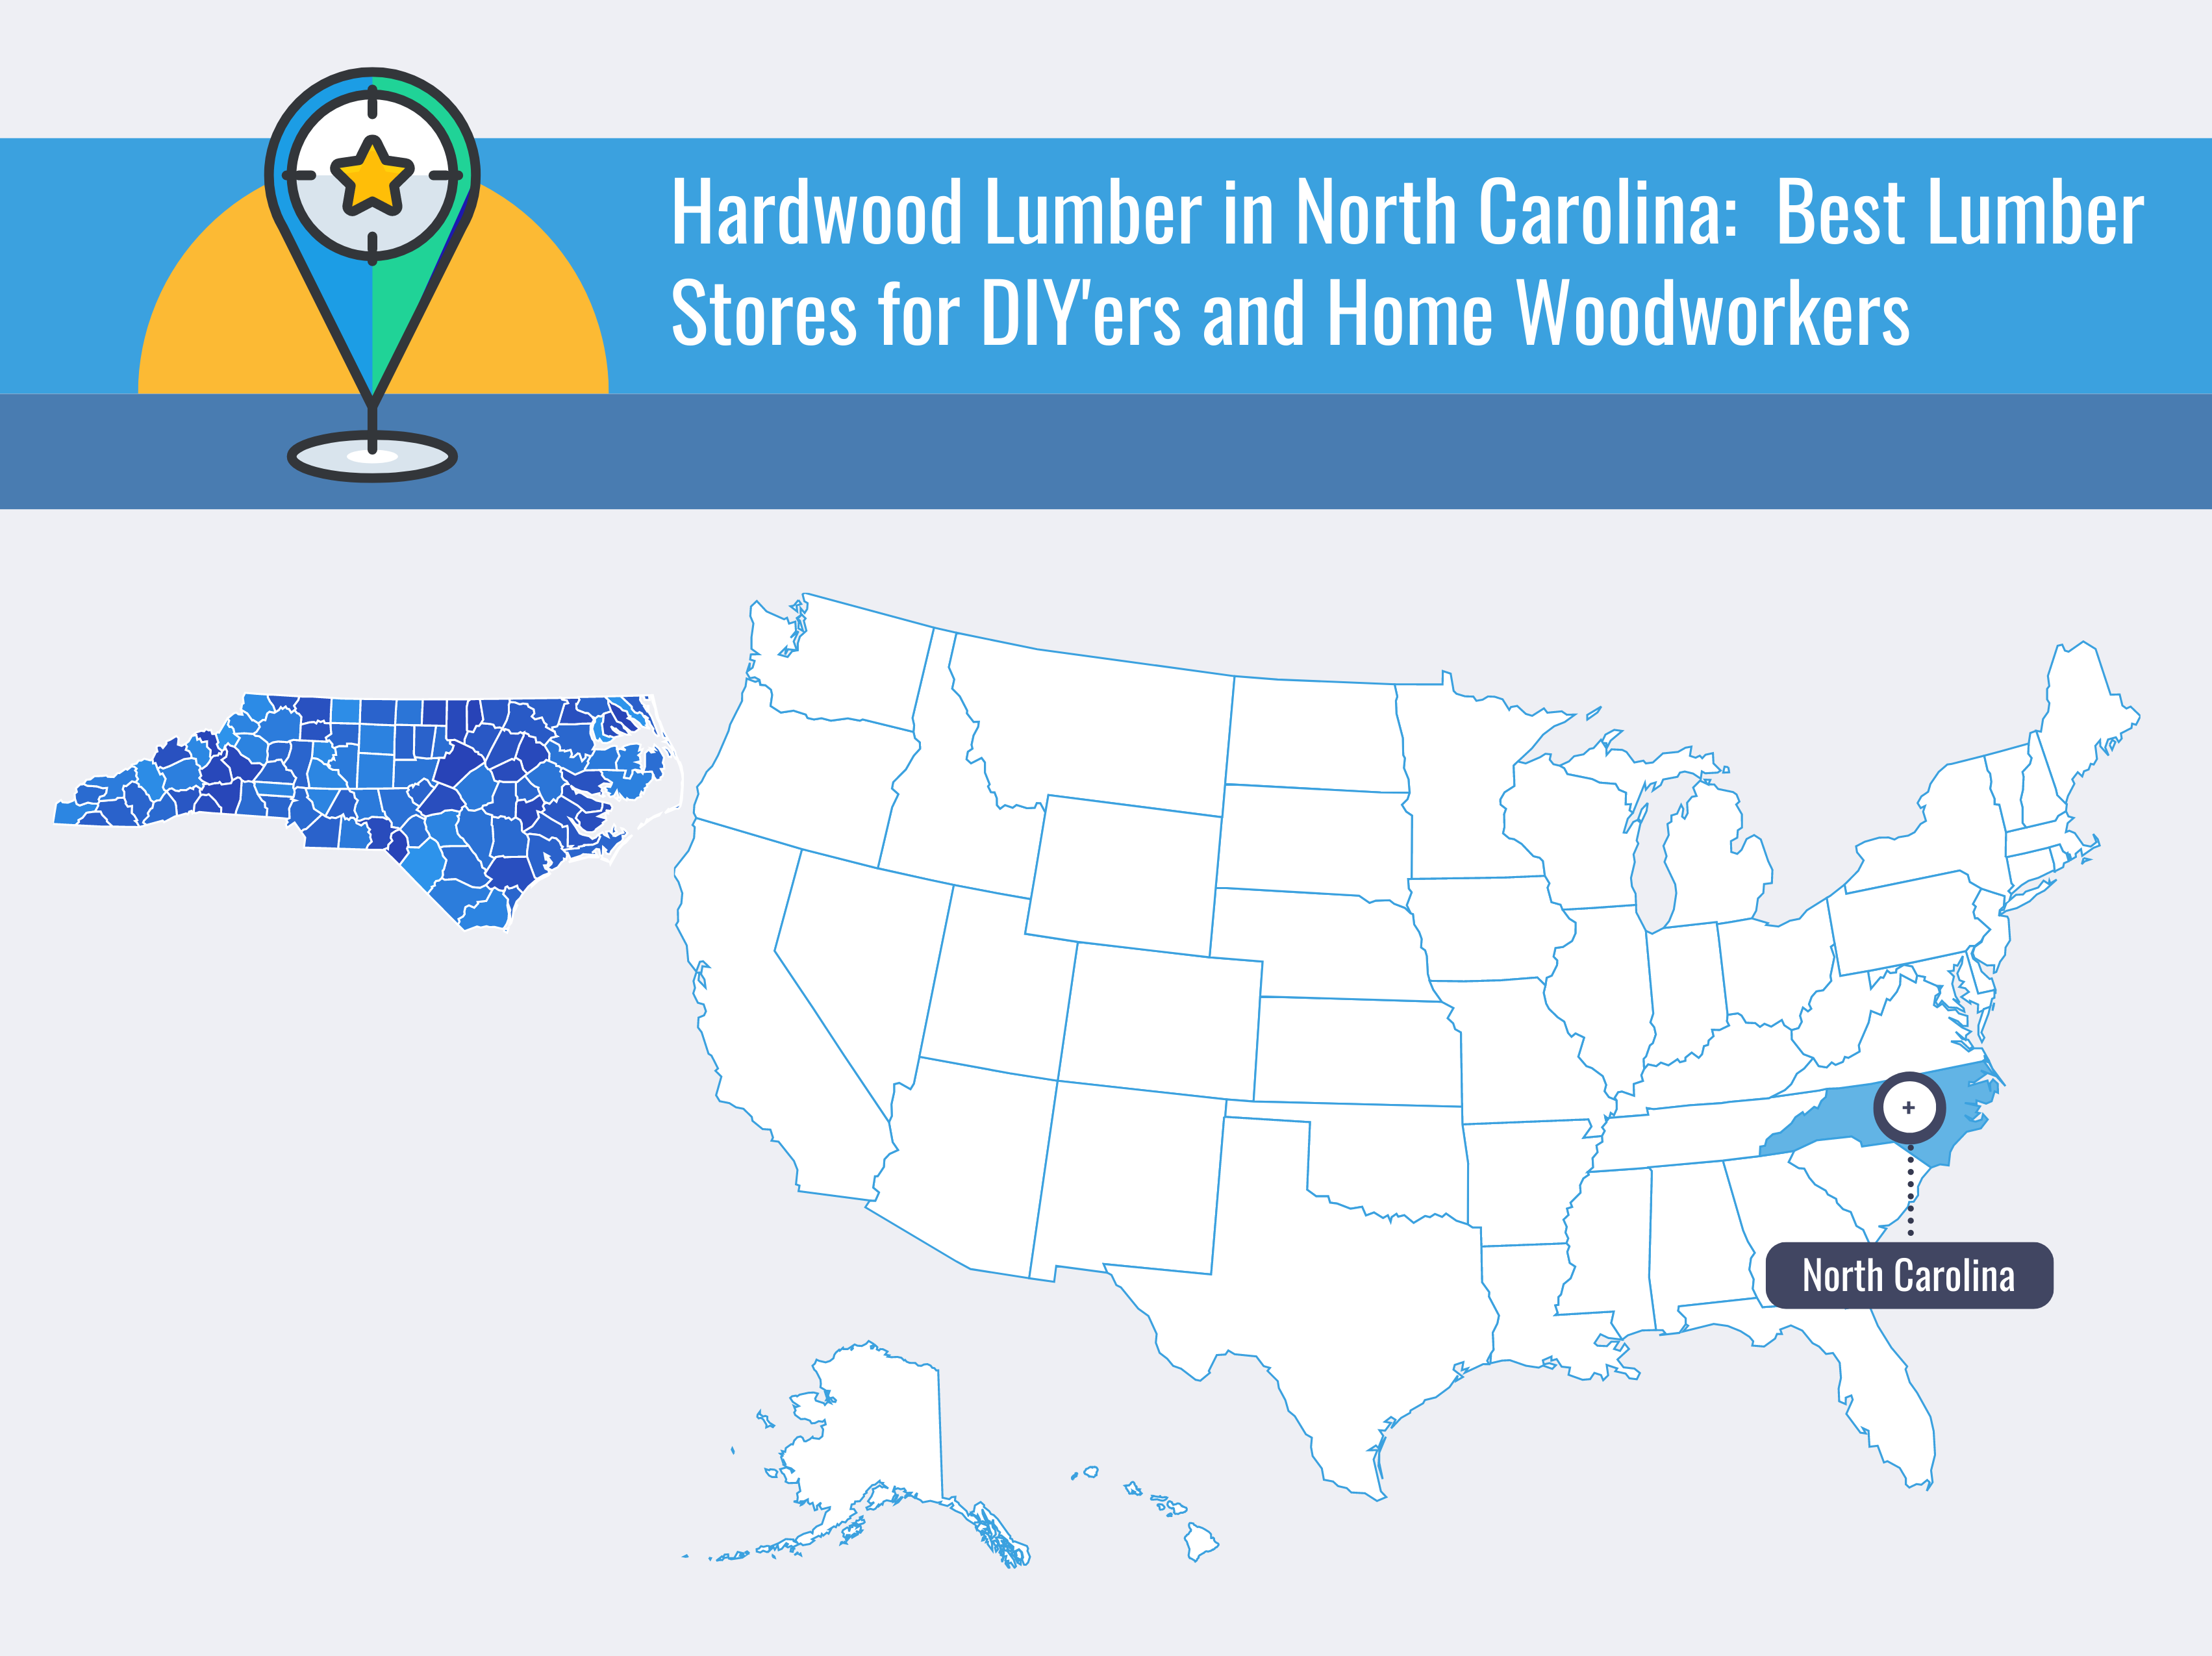 Hardwood Lumber in North Carolina Best Lumber Stores